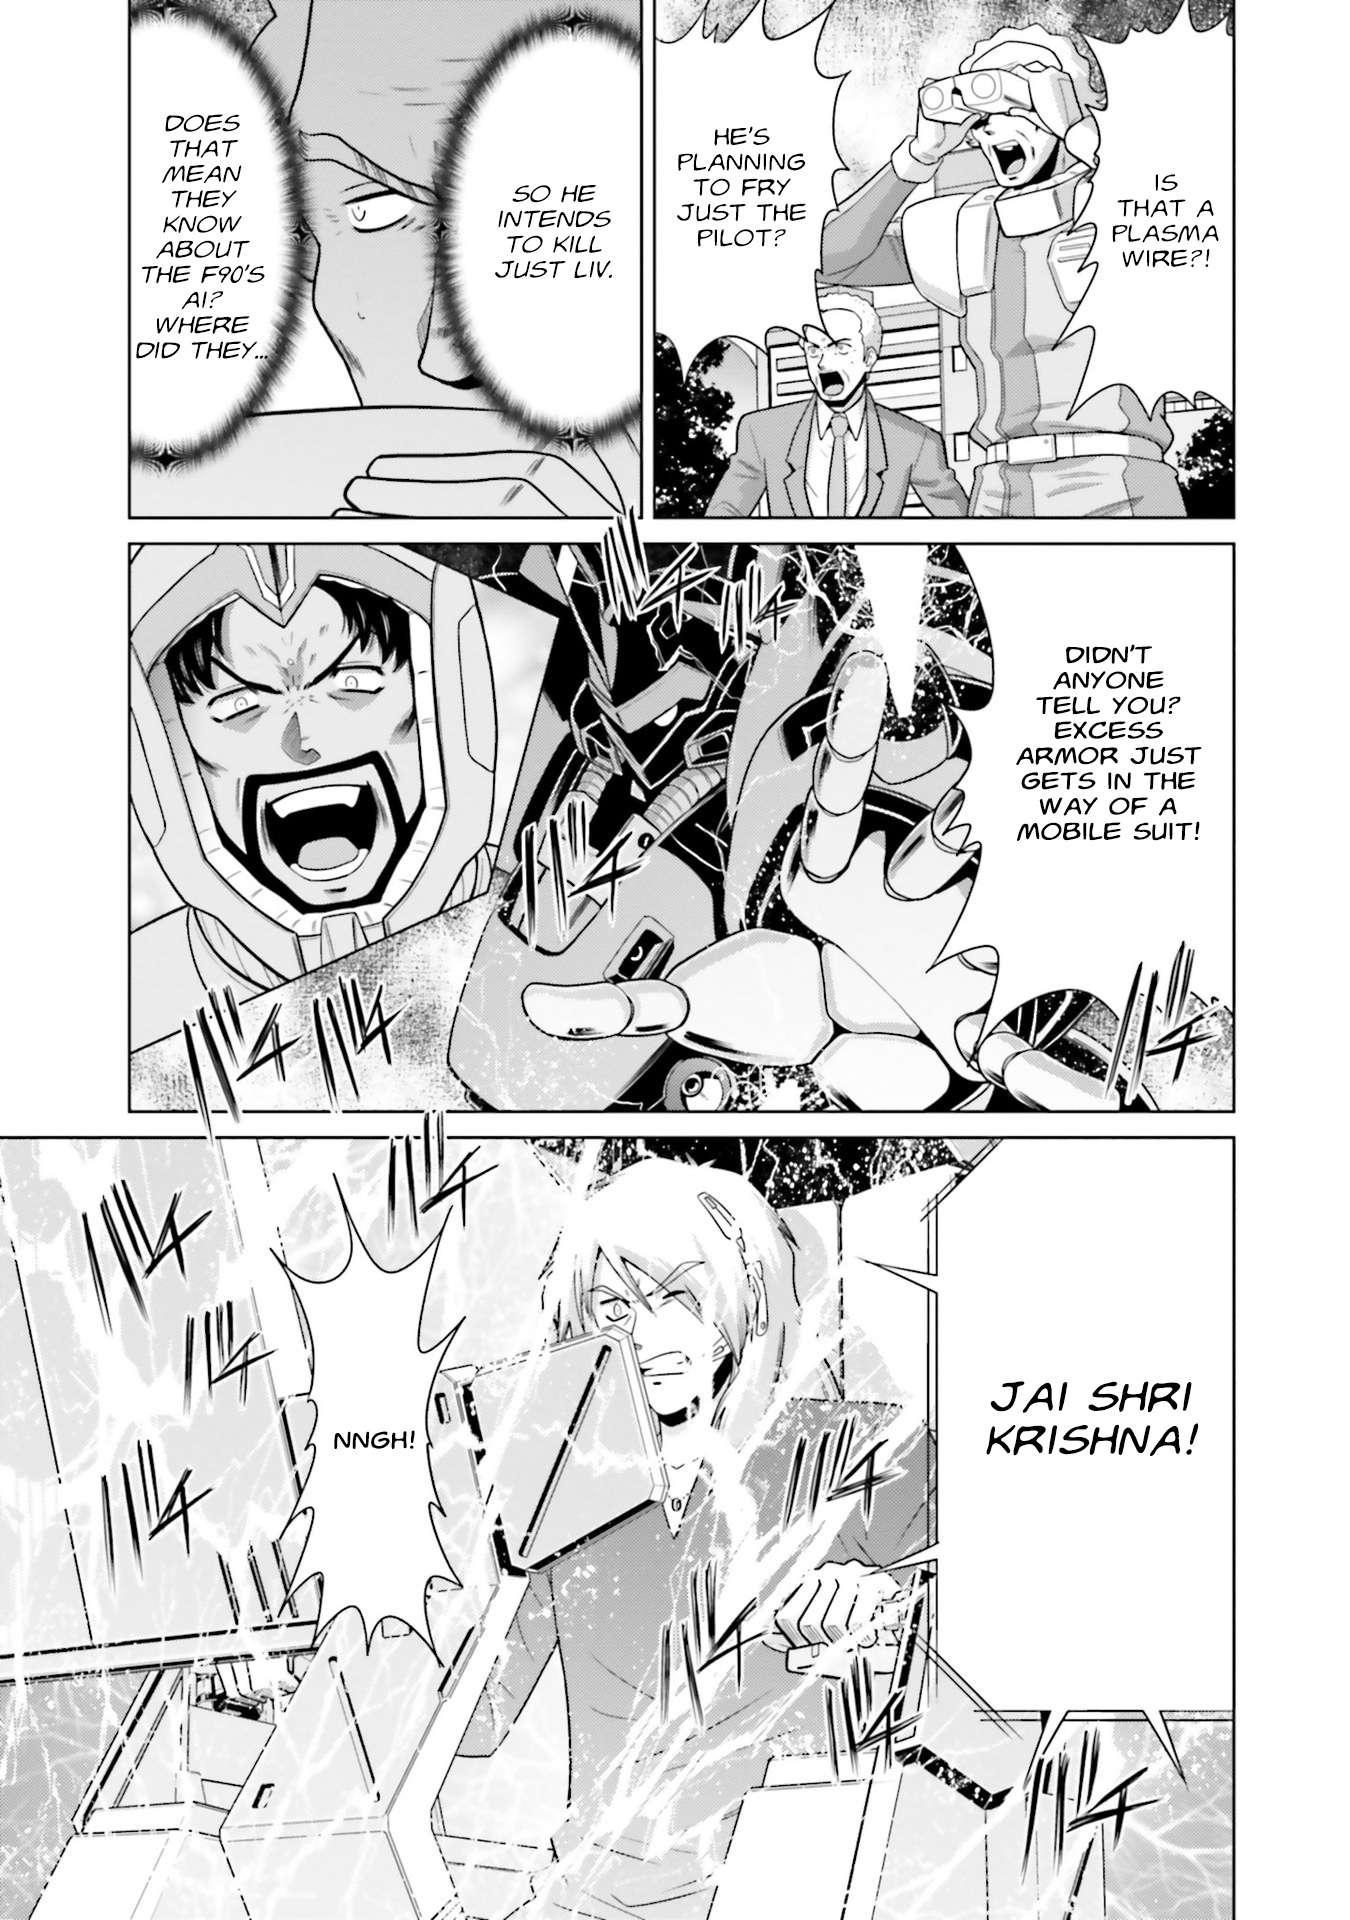 Kidou Senshi Gundam F90 FF - chapter 32 - #3